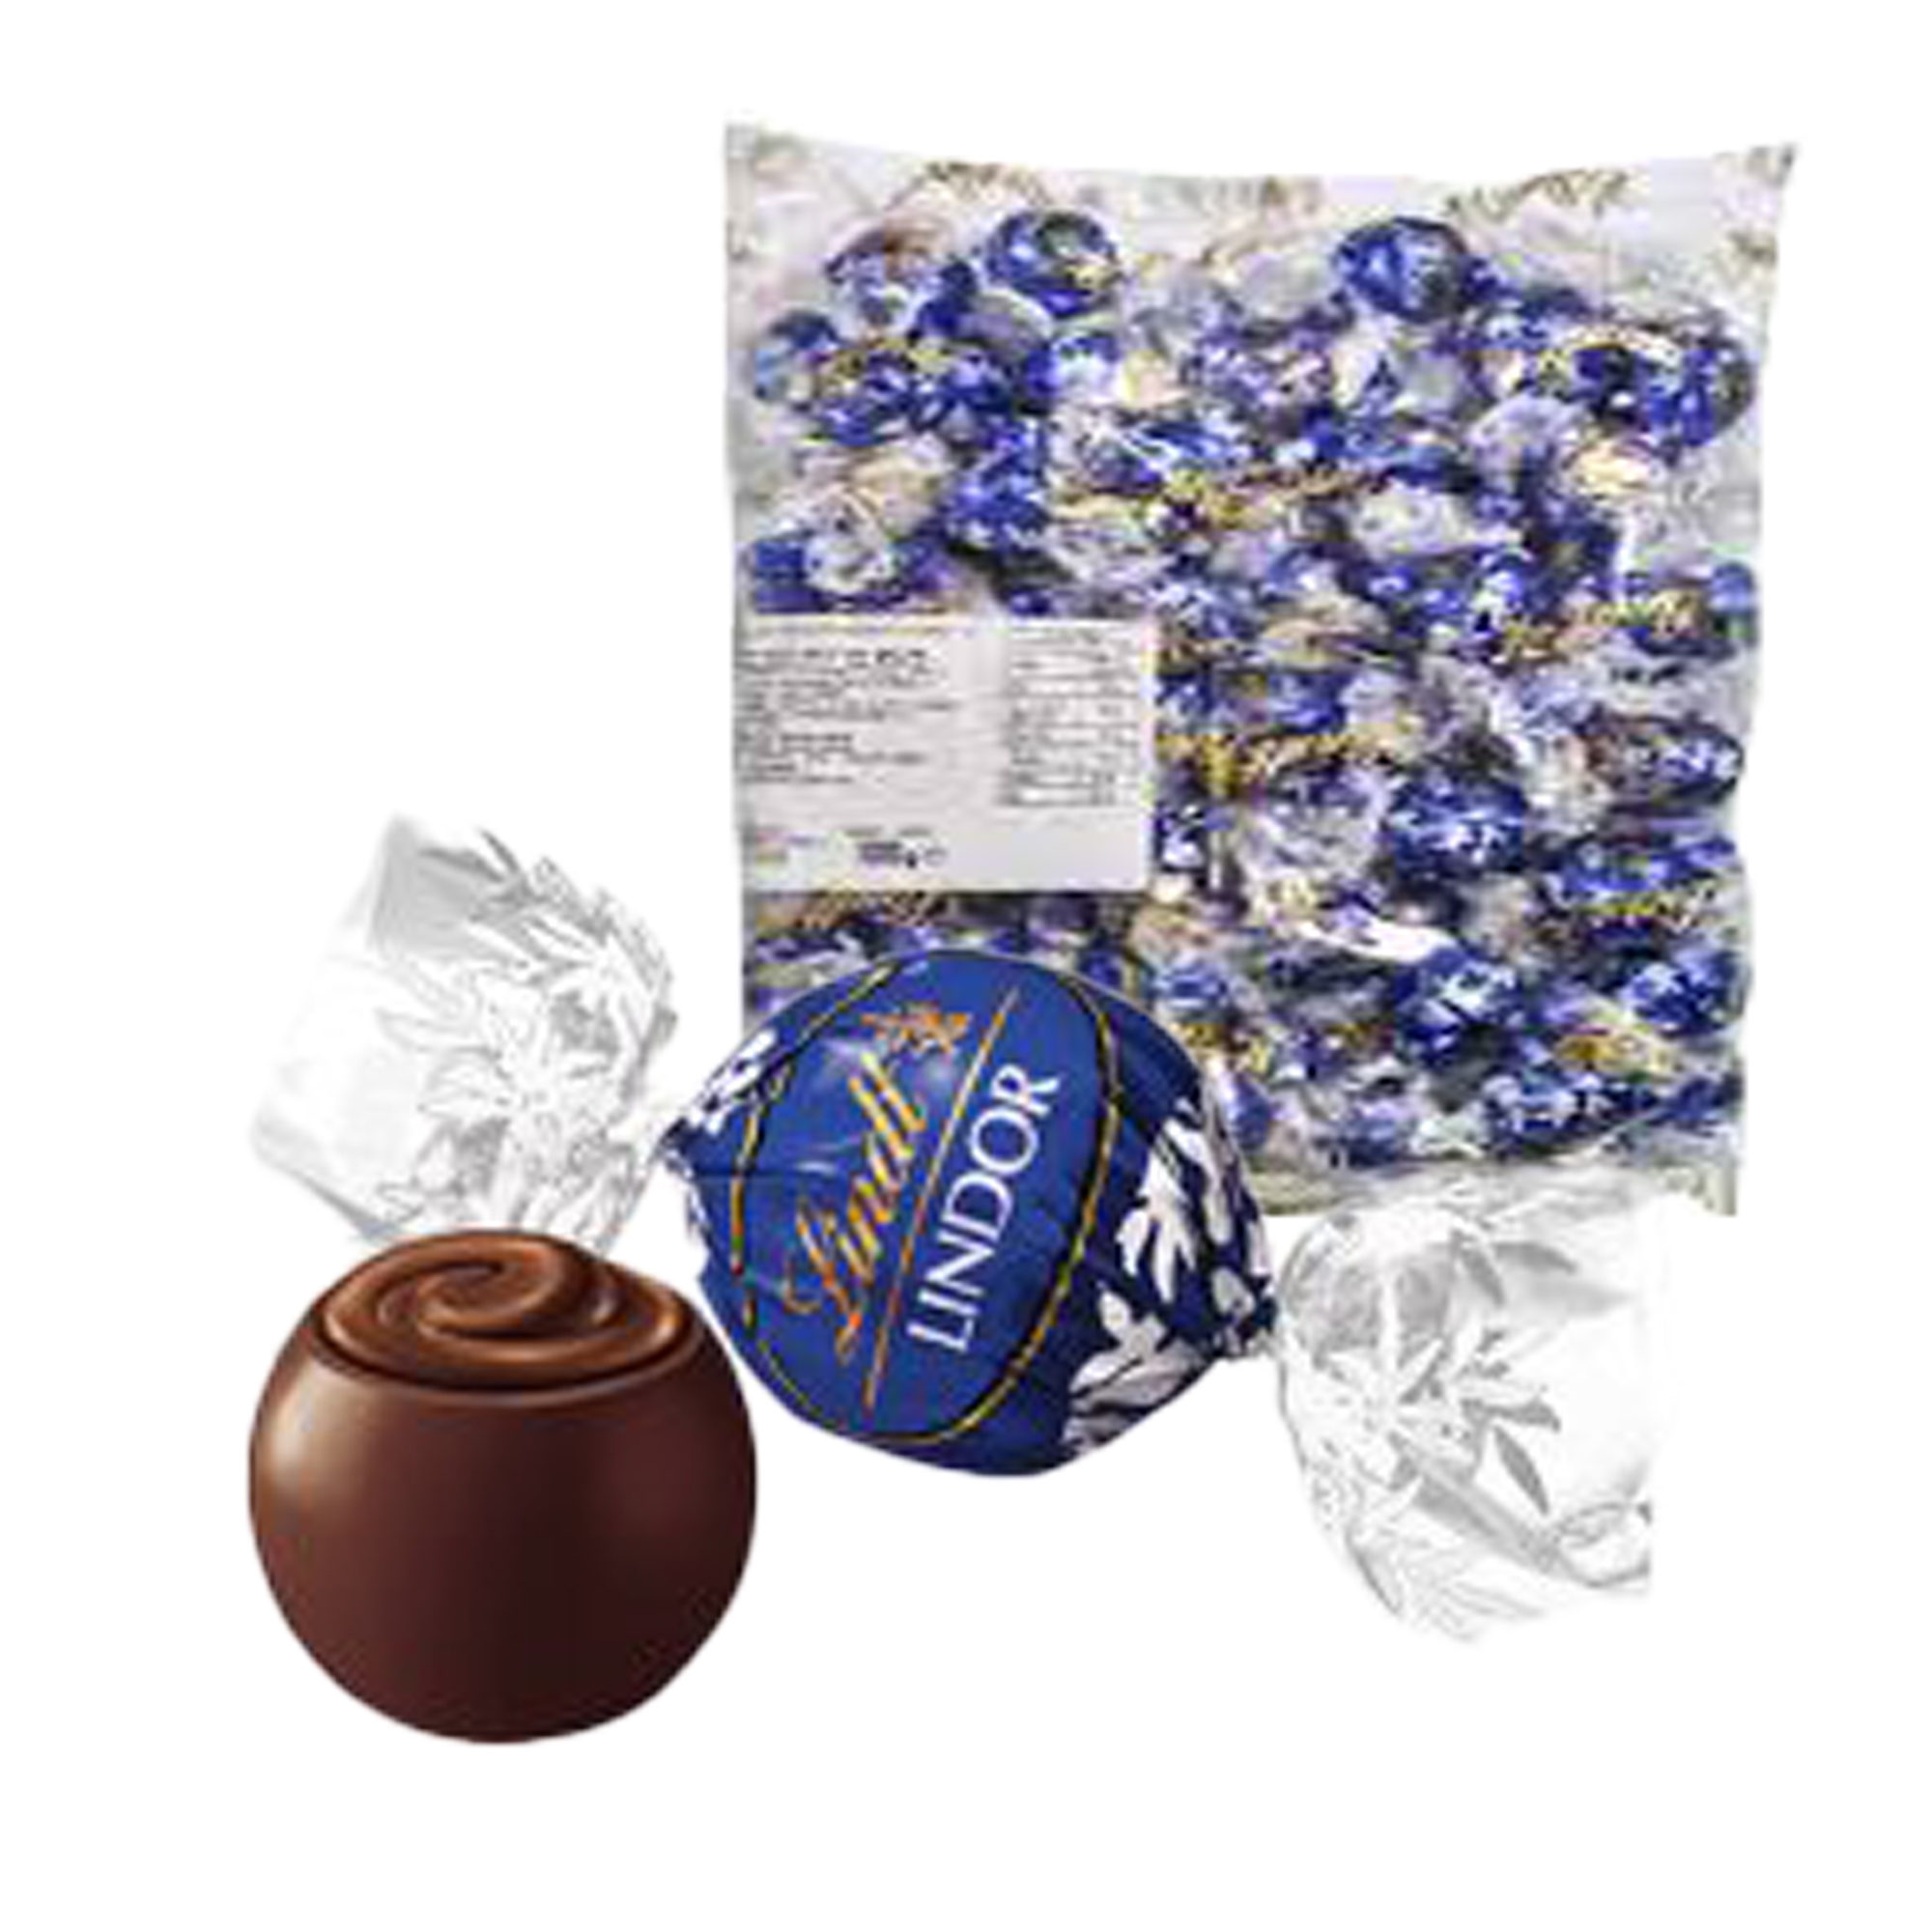 Busta Lindor - cioccolato fondente - 1 kg - Lindt